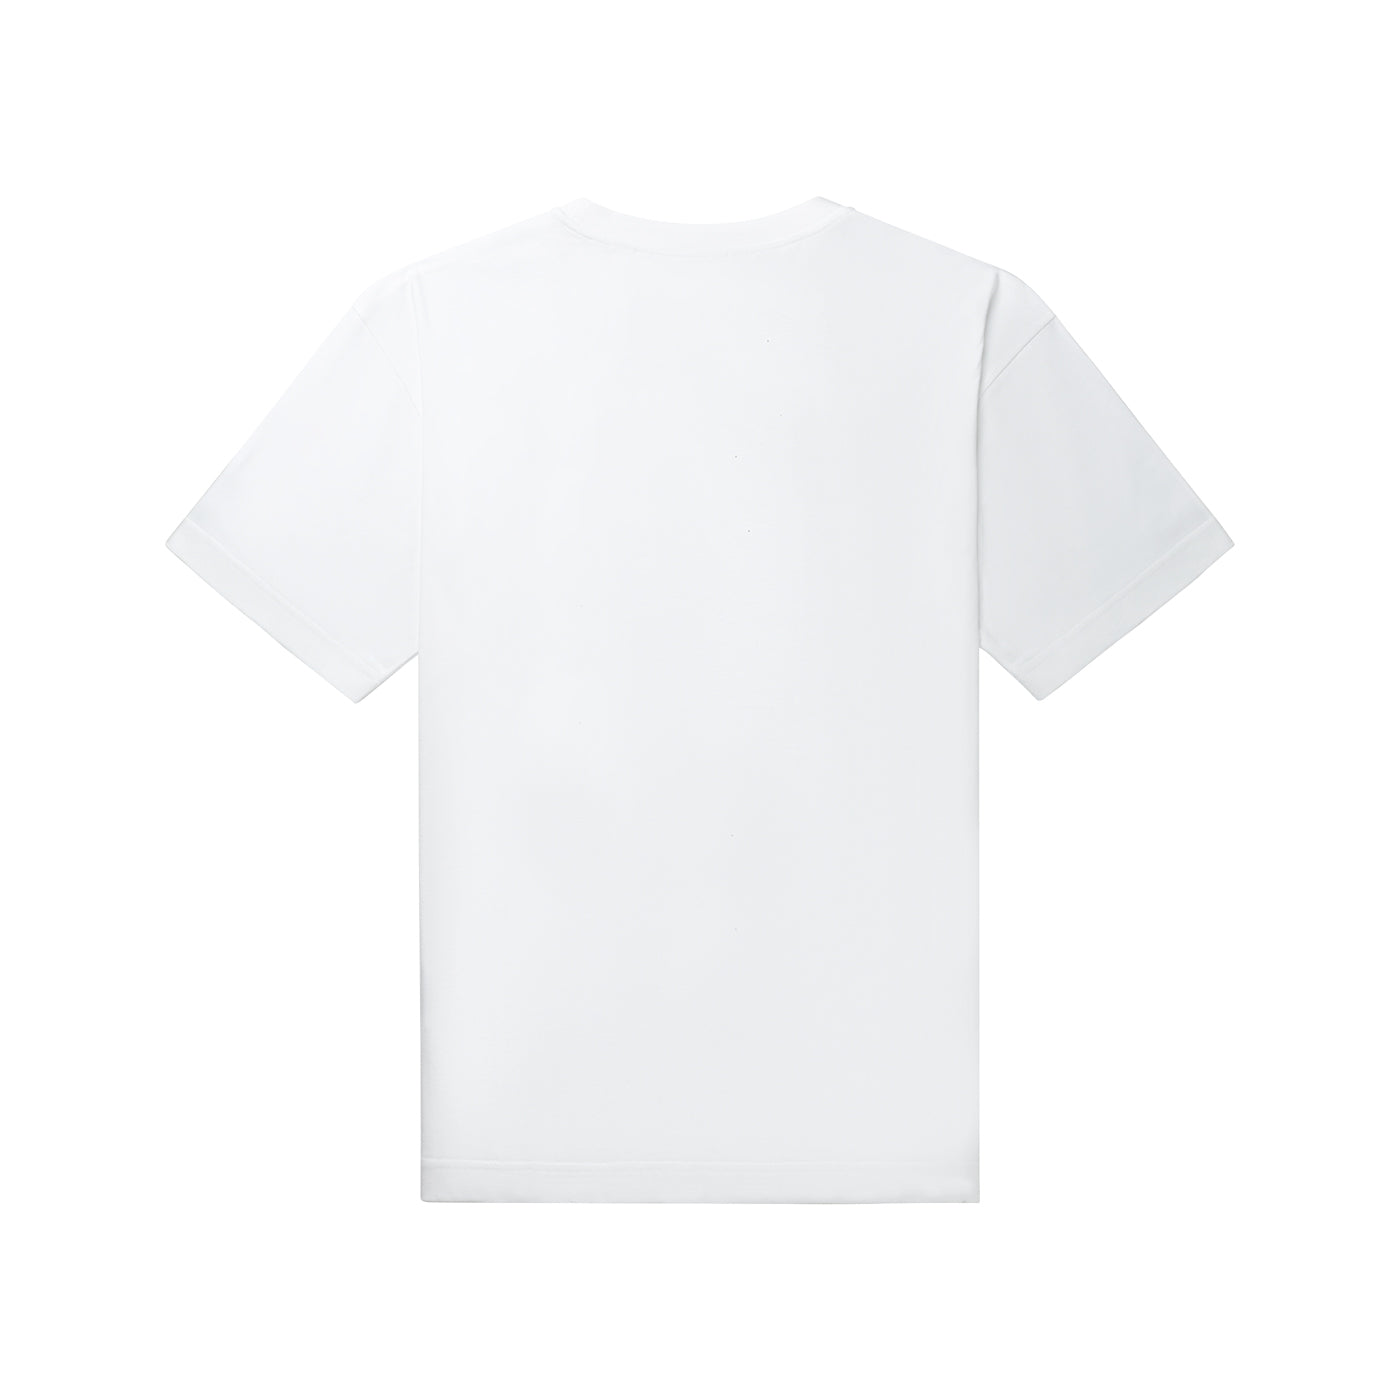 Rashad Short-Sleeve T-Shirt - White